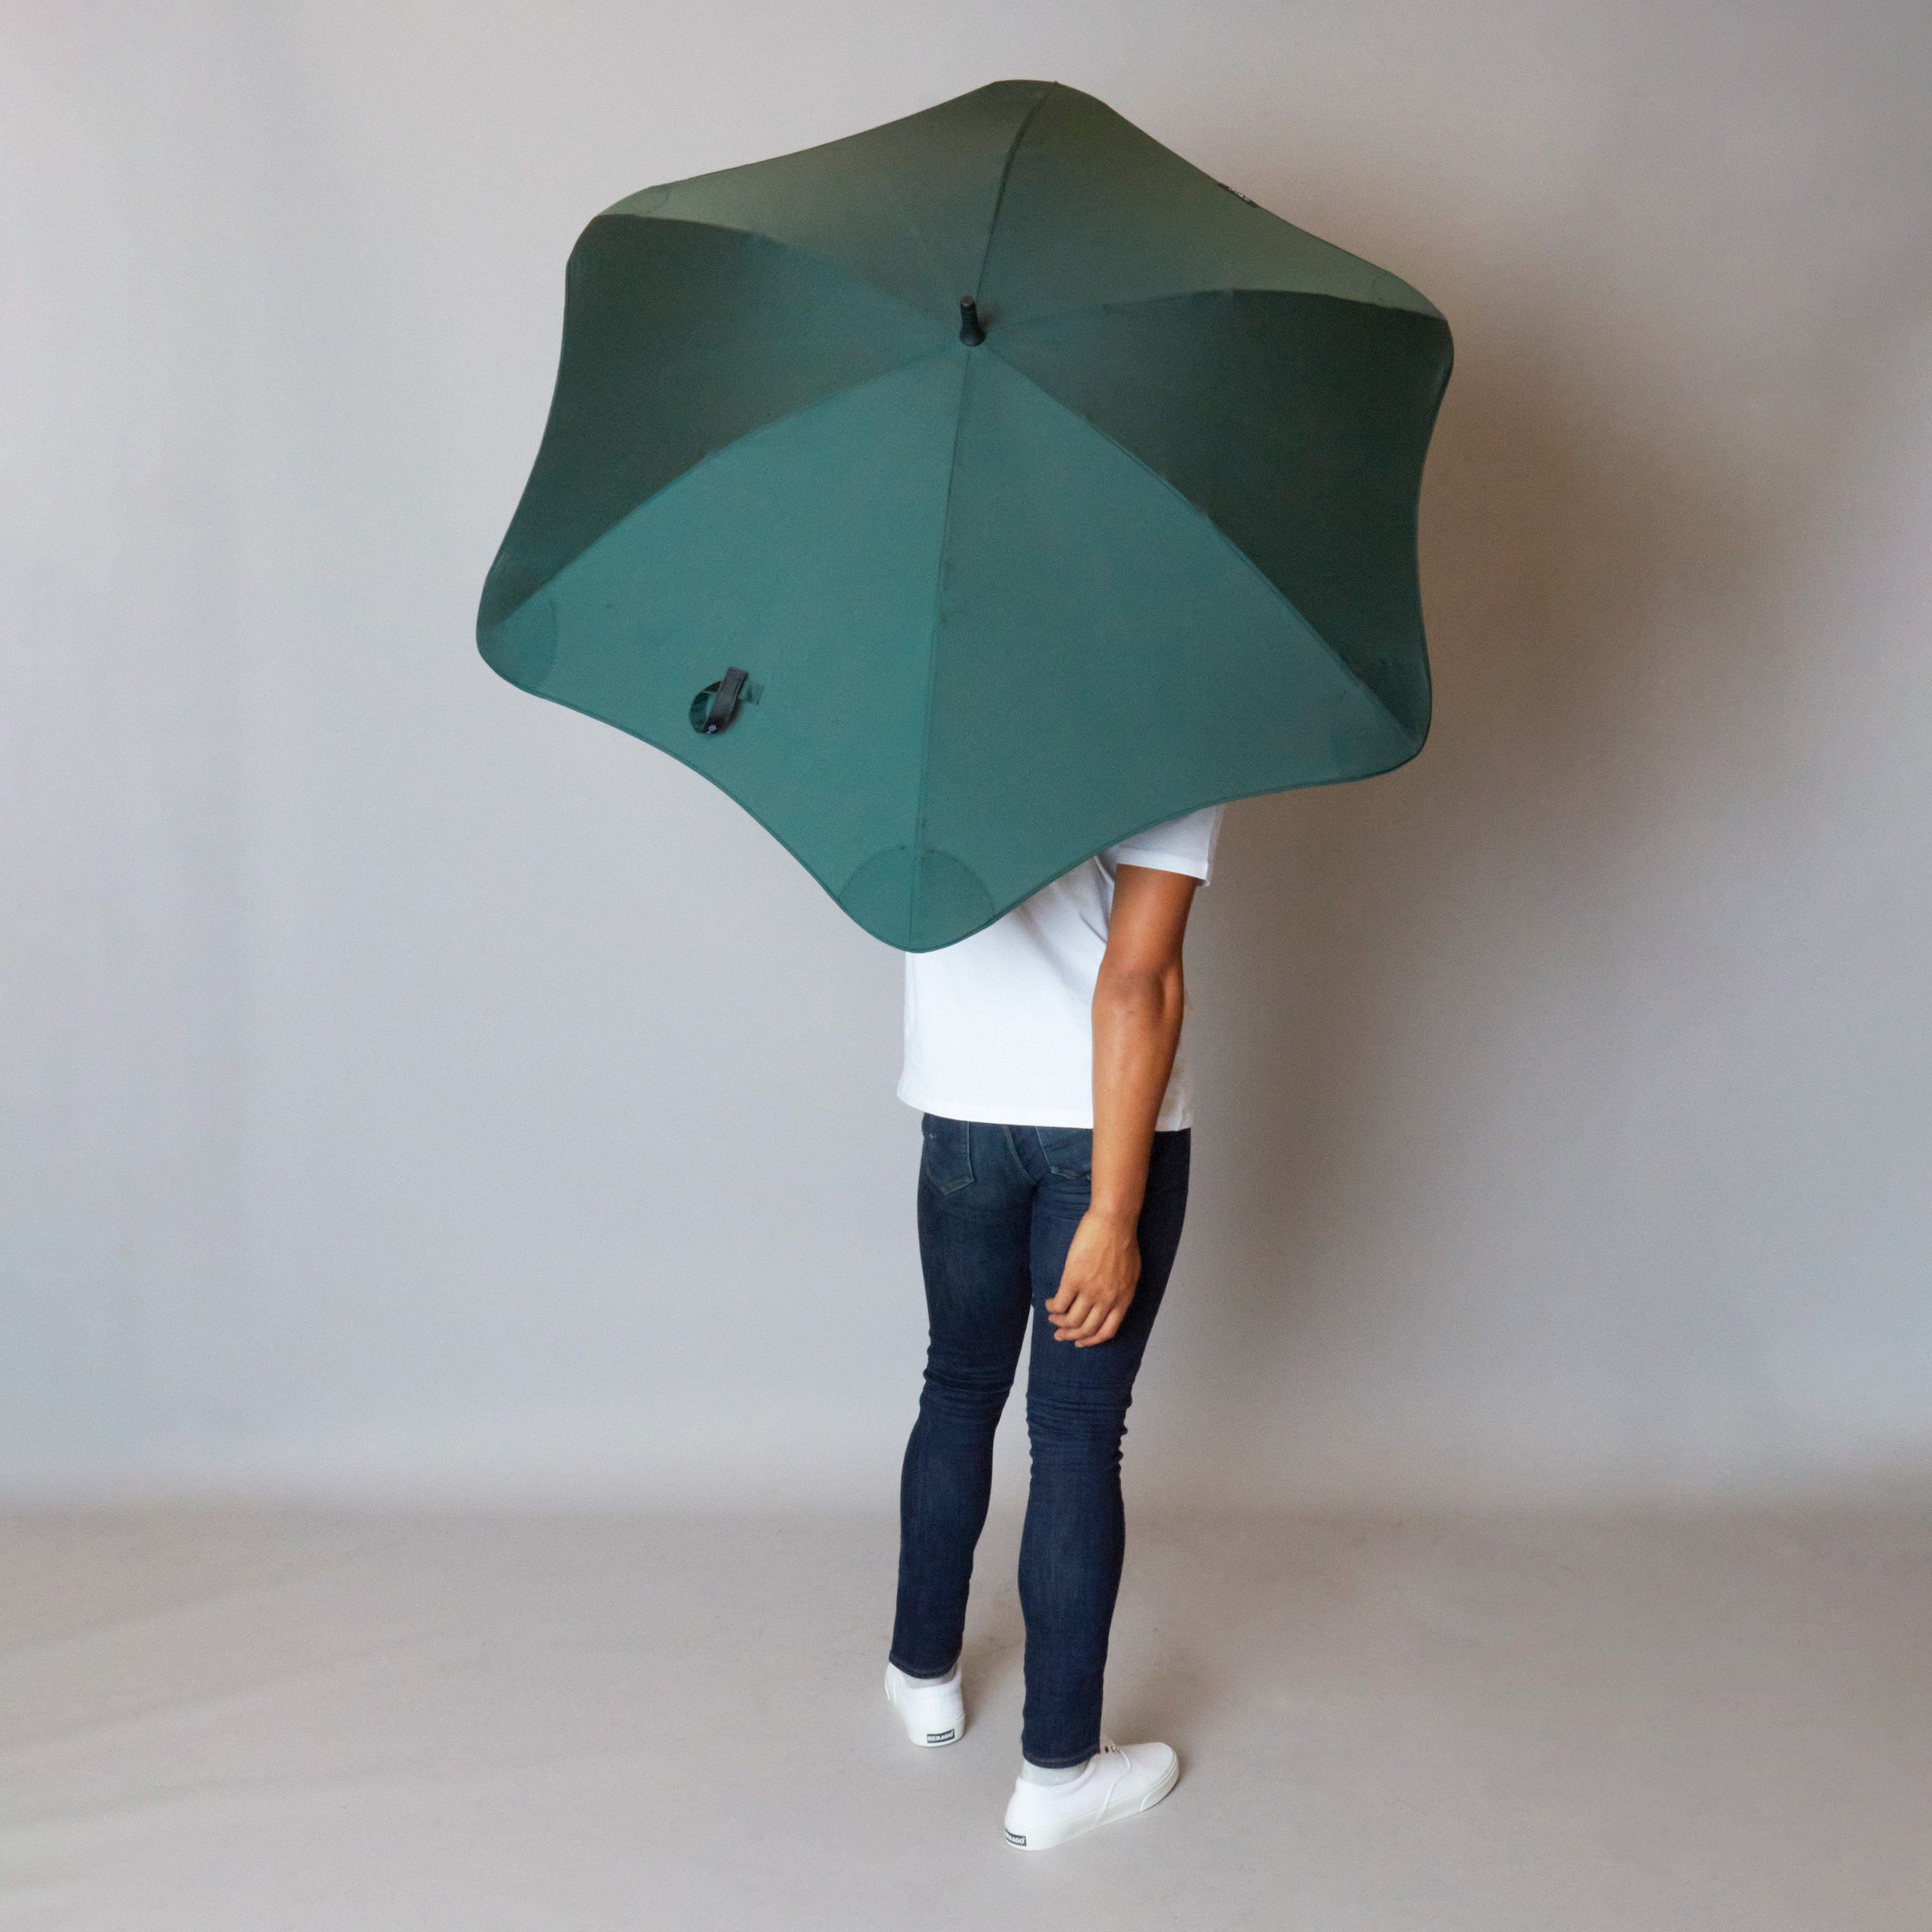 Stockregenschirm dunkelgrün Blunt Silhouette einzigartige Technologie, herausragende patentierte Classic,